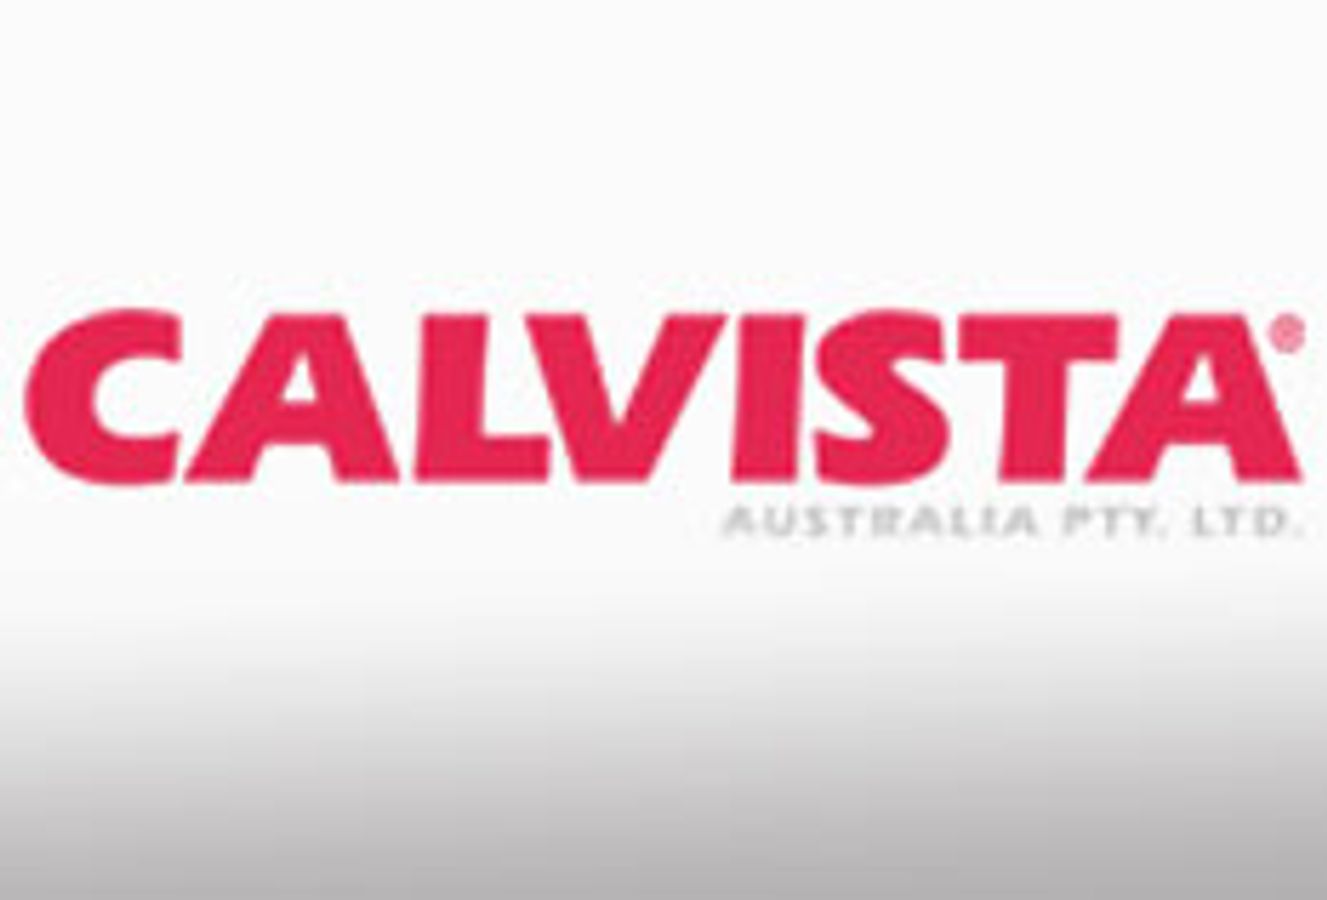 Calvista Australia